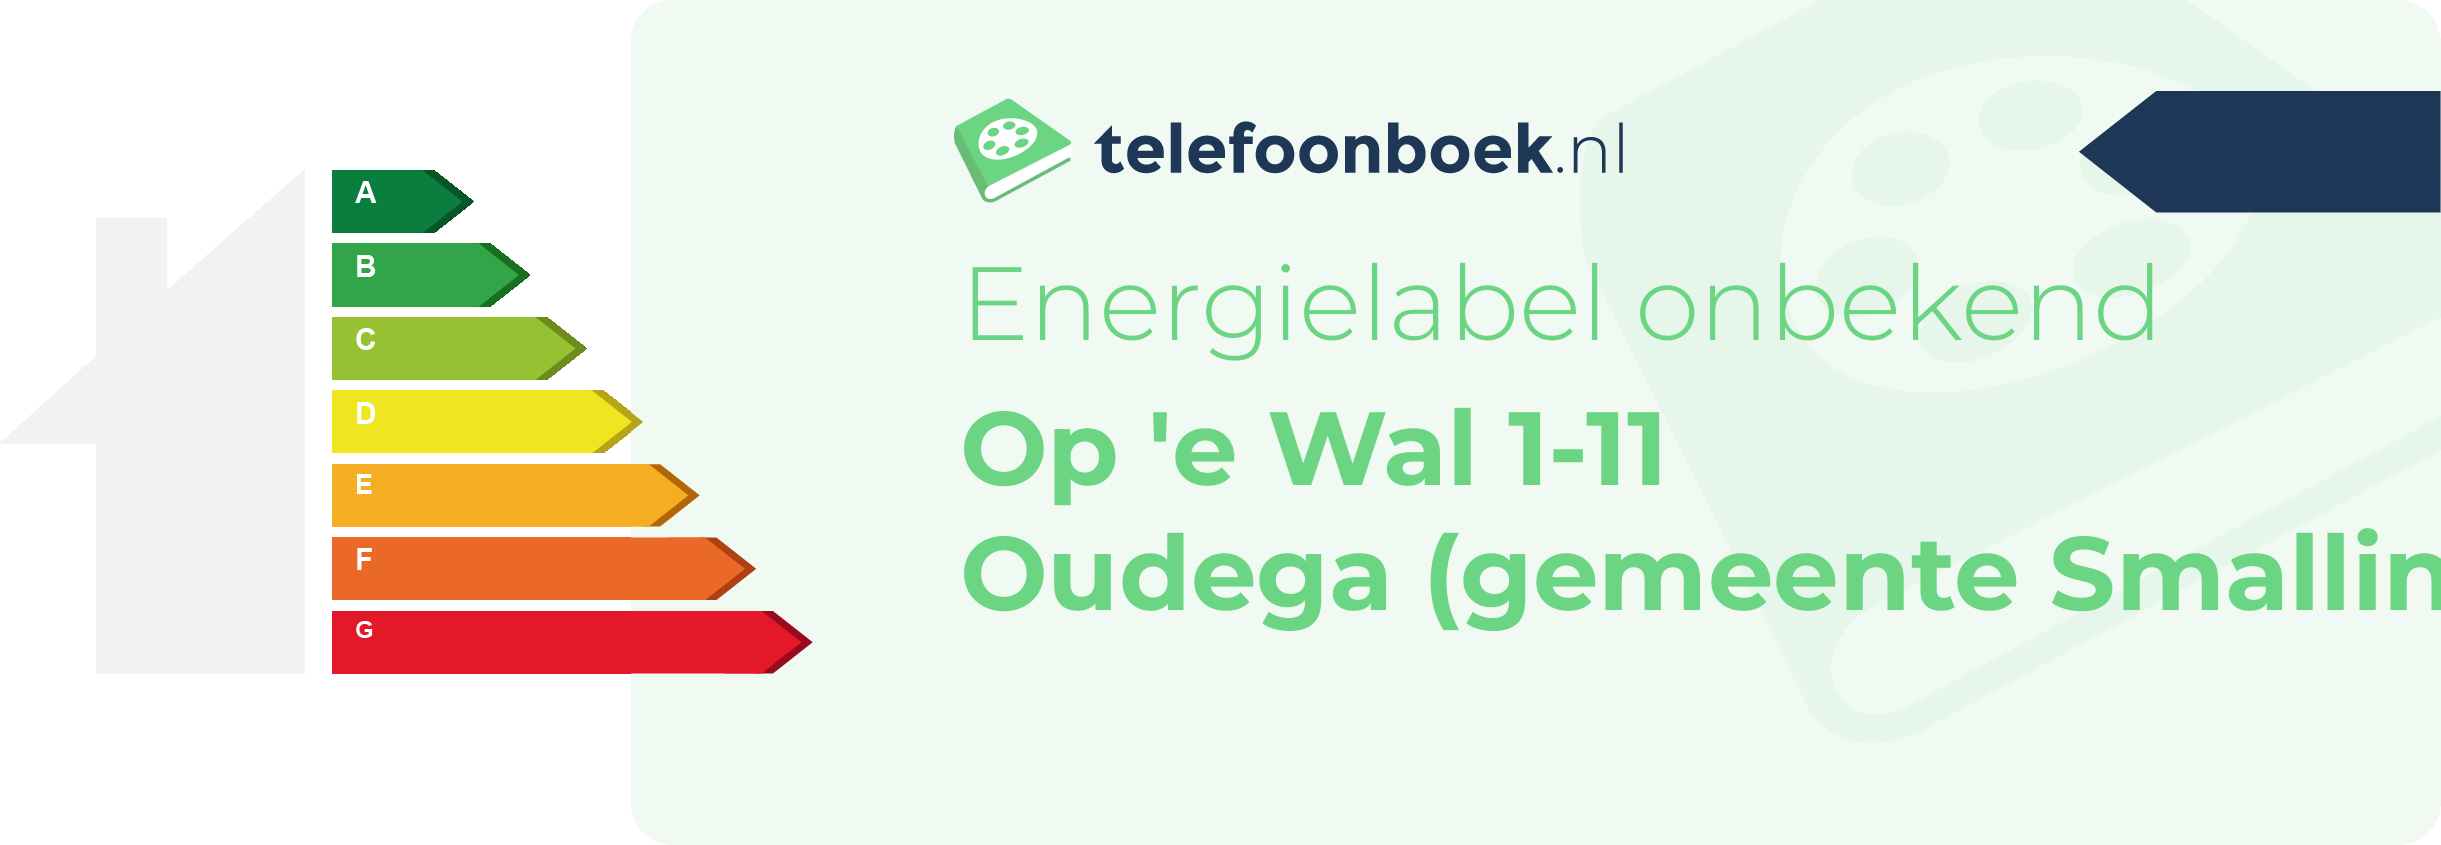 Energielabel Op 'e Wal 1-11 Oudega (gemeente Smallingerland Friesland)